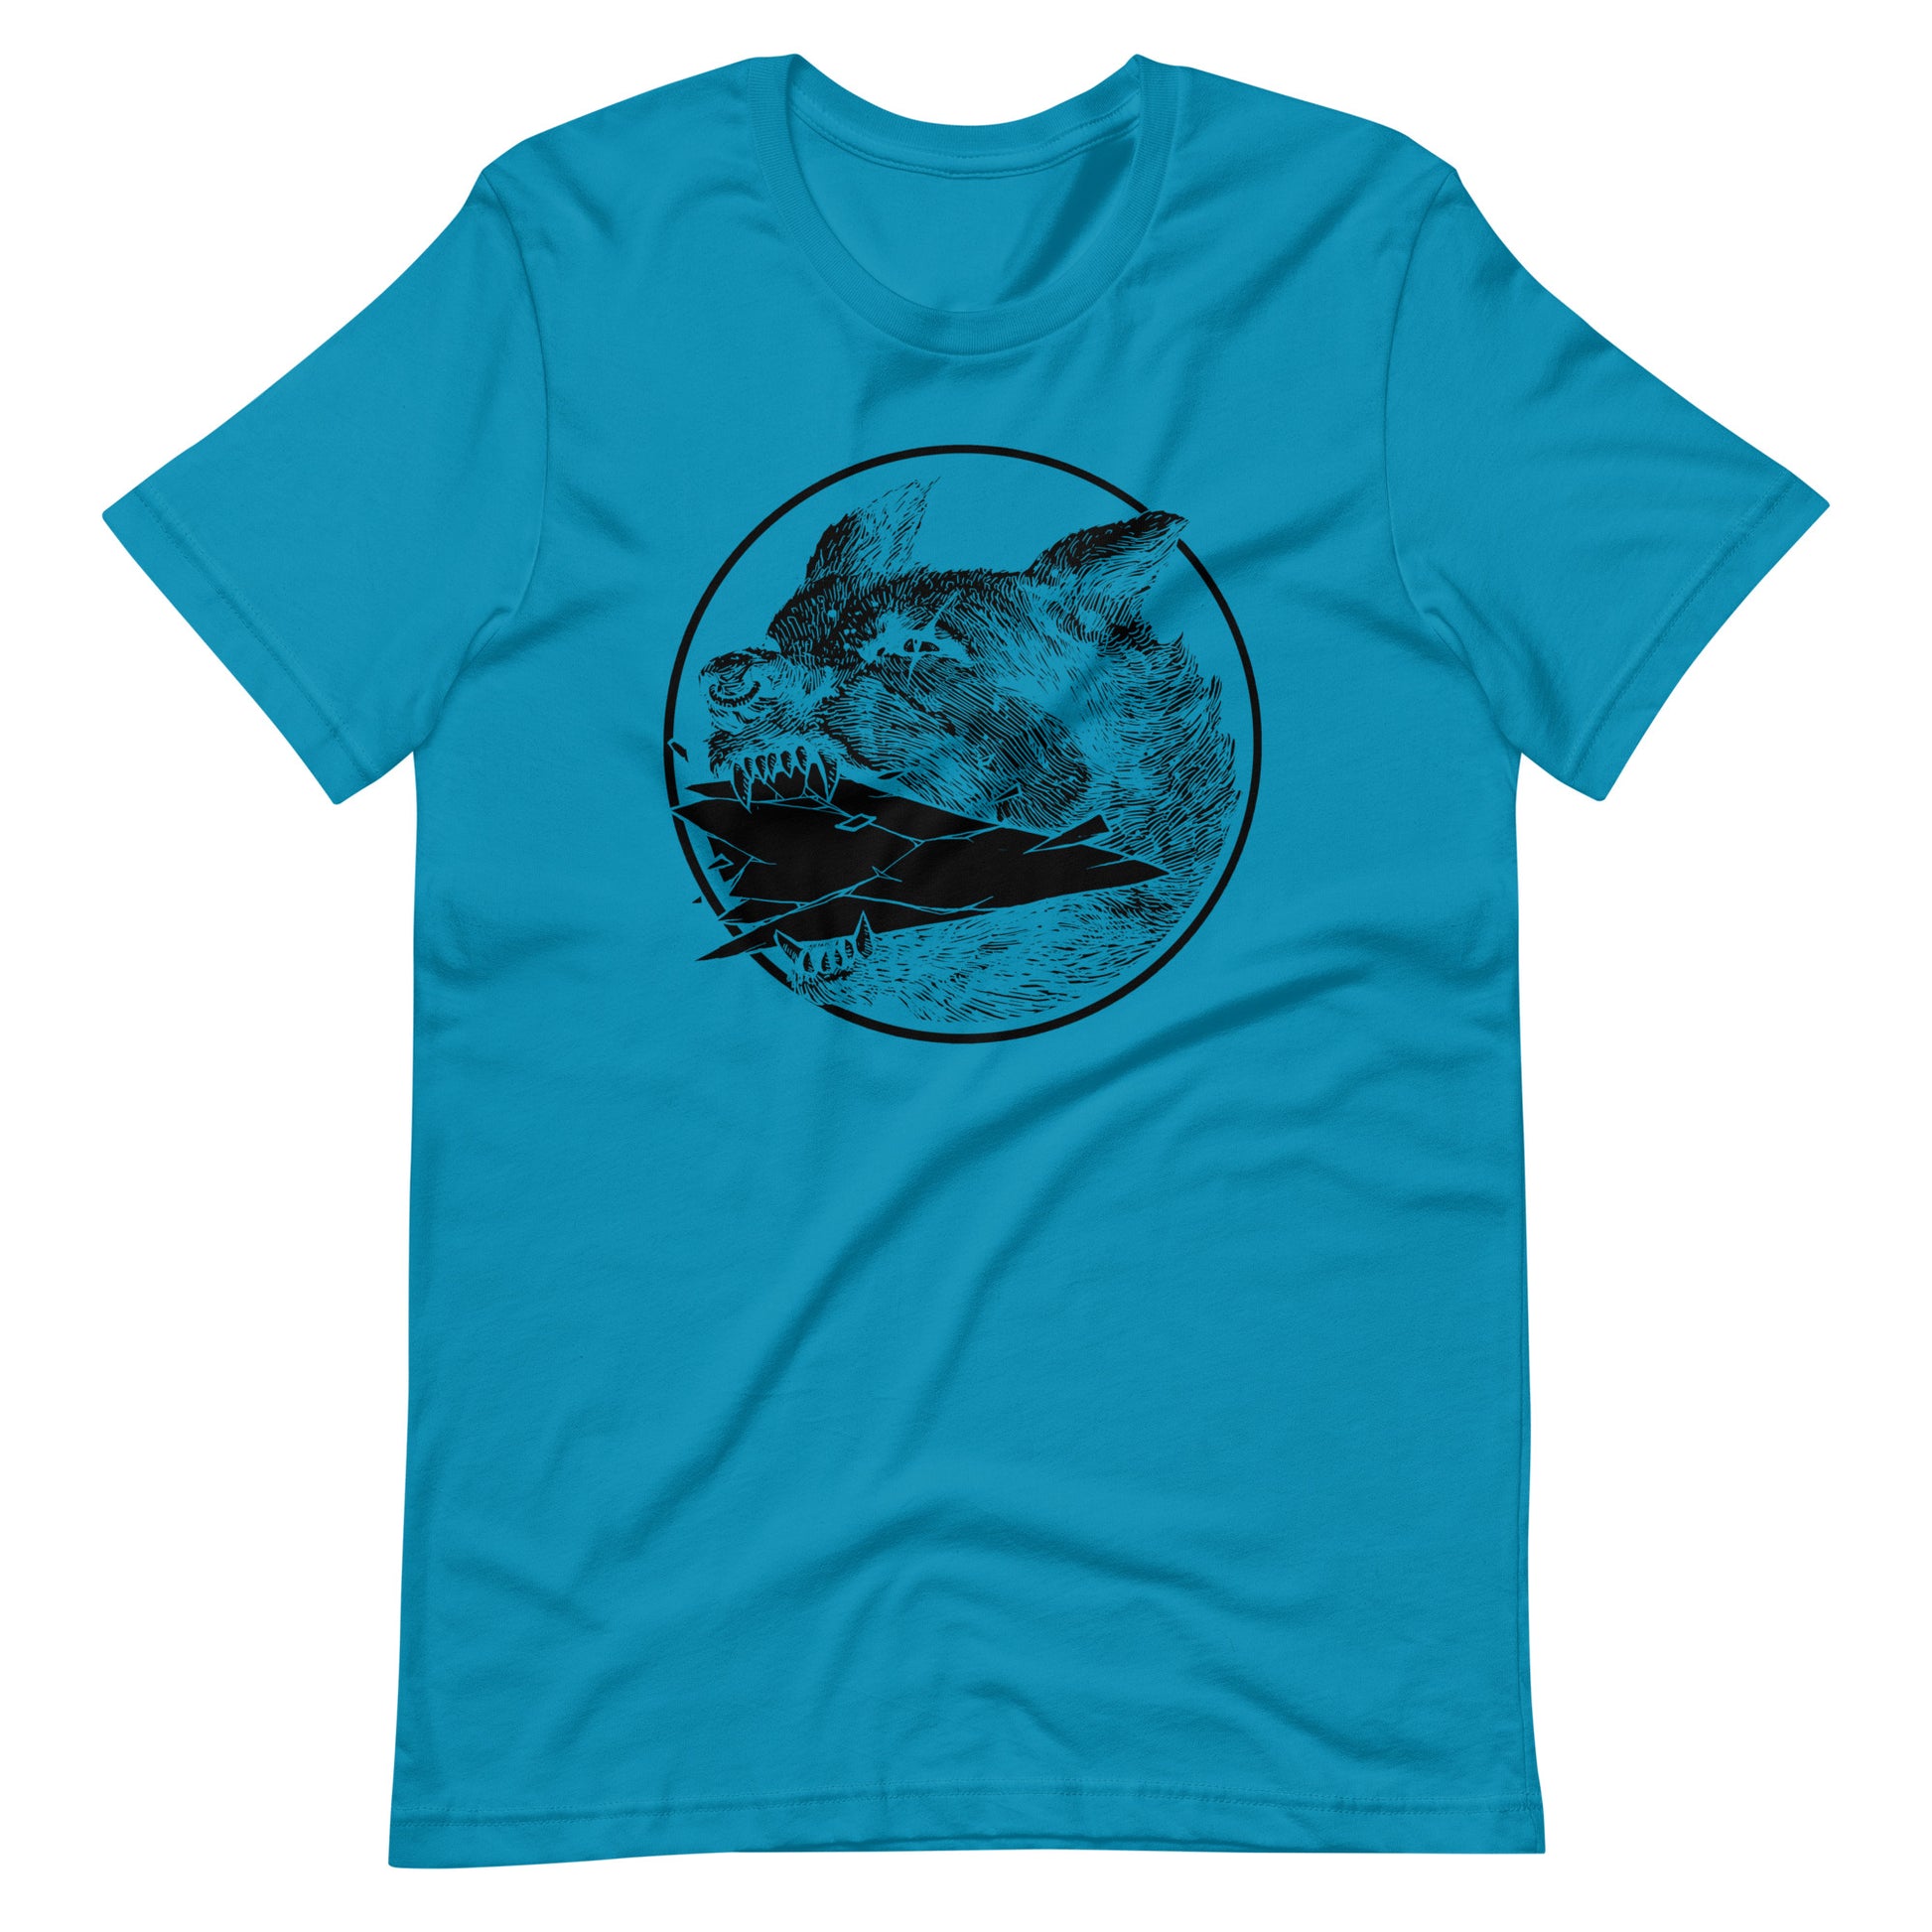 Shard Black - Men's t-shirt - Aqua Front